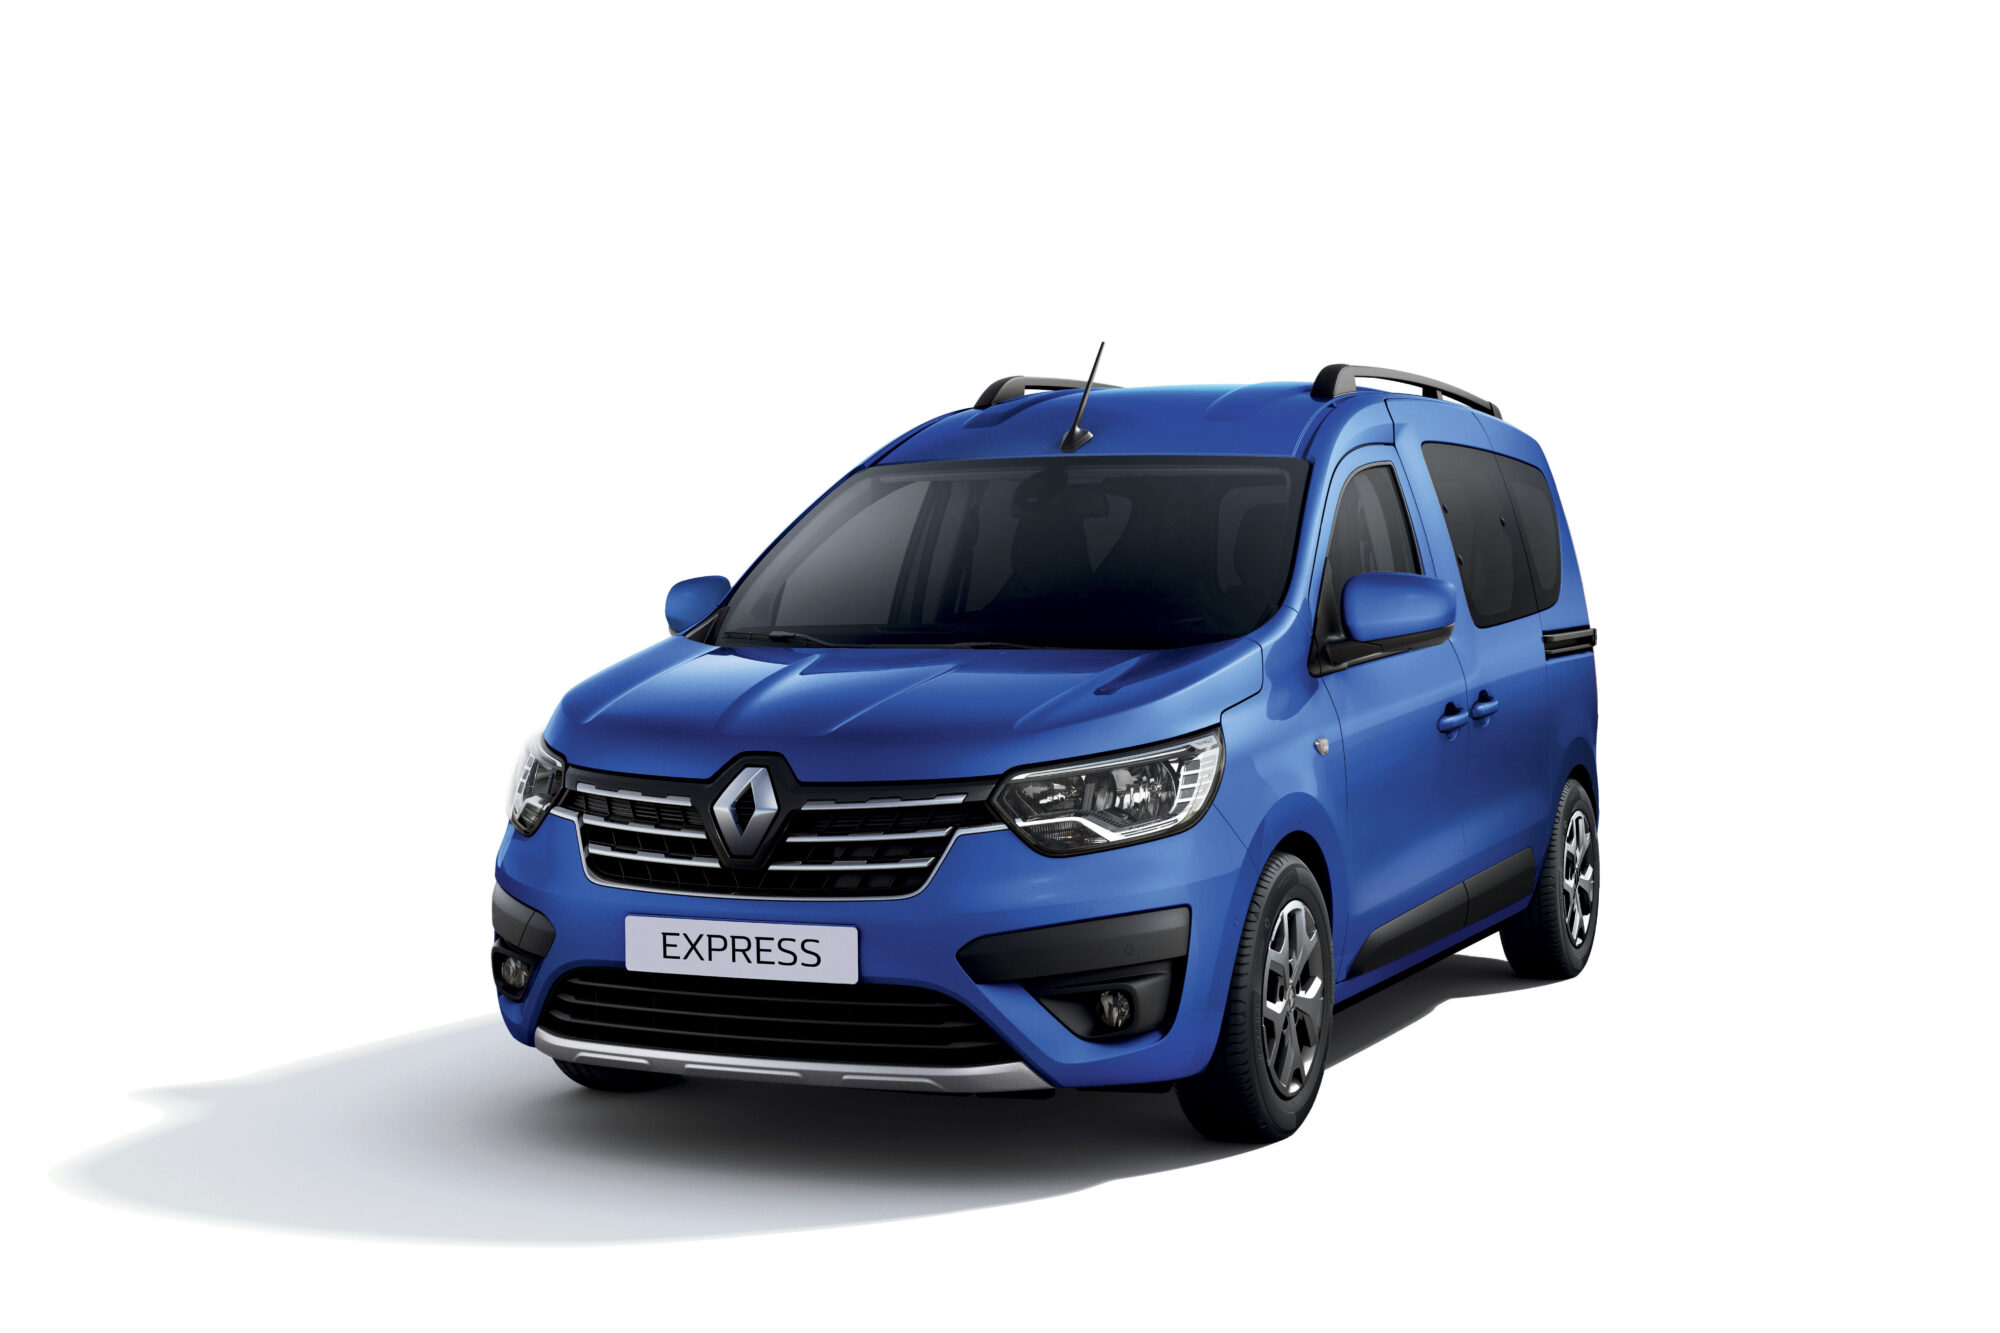 2021 - New Renault Express - In studio